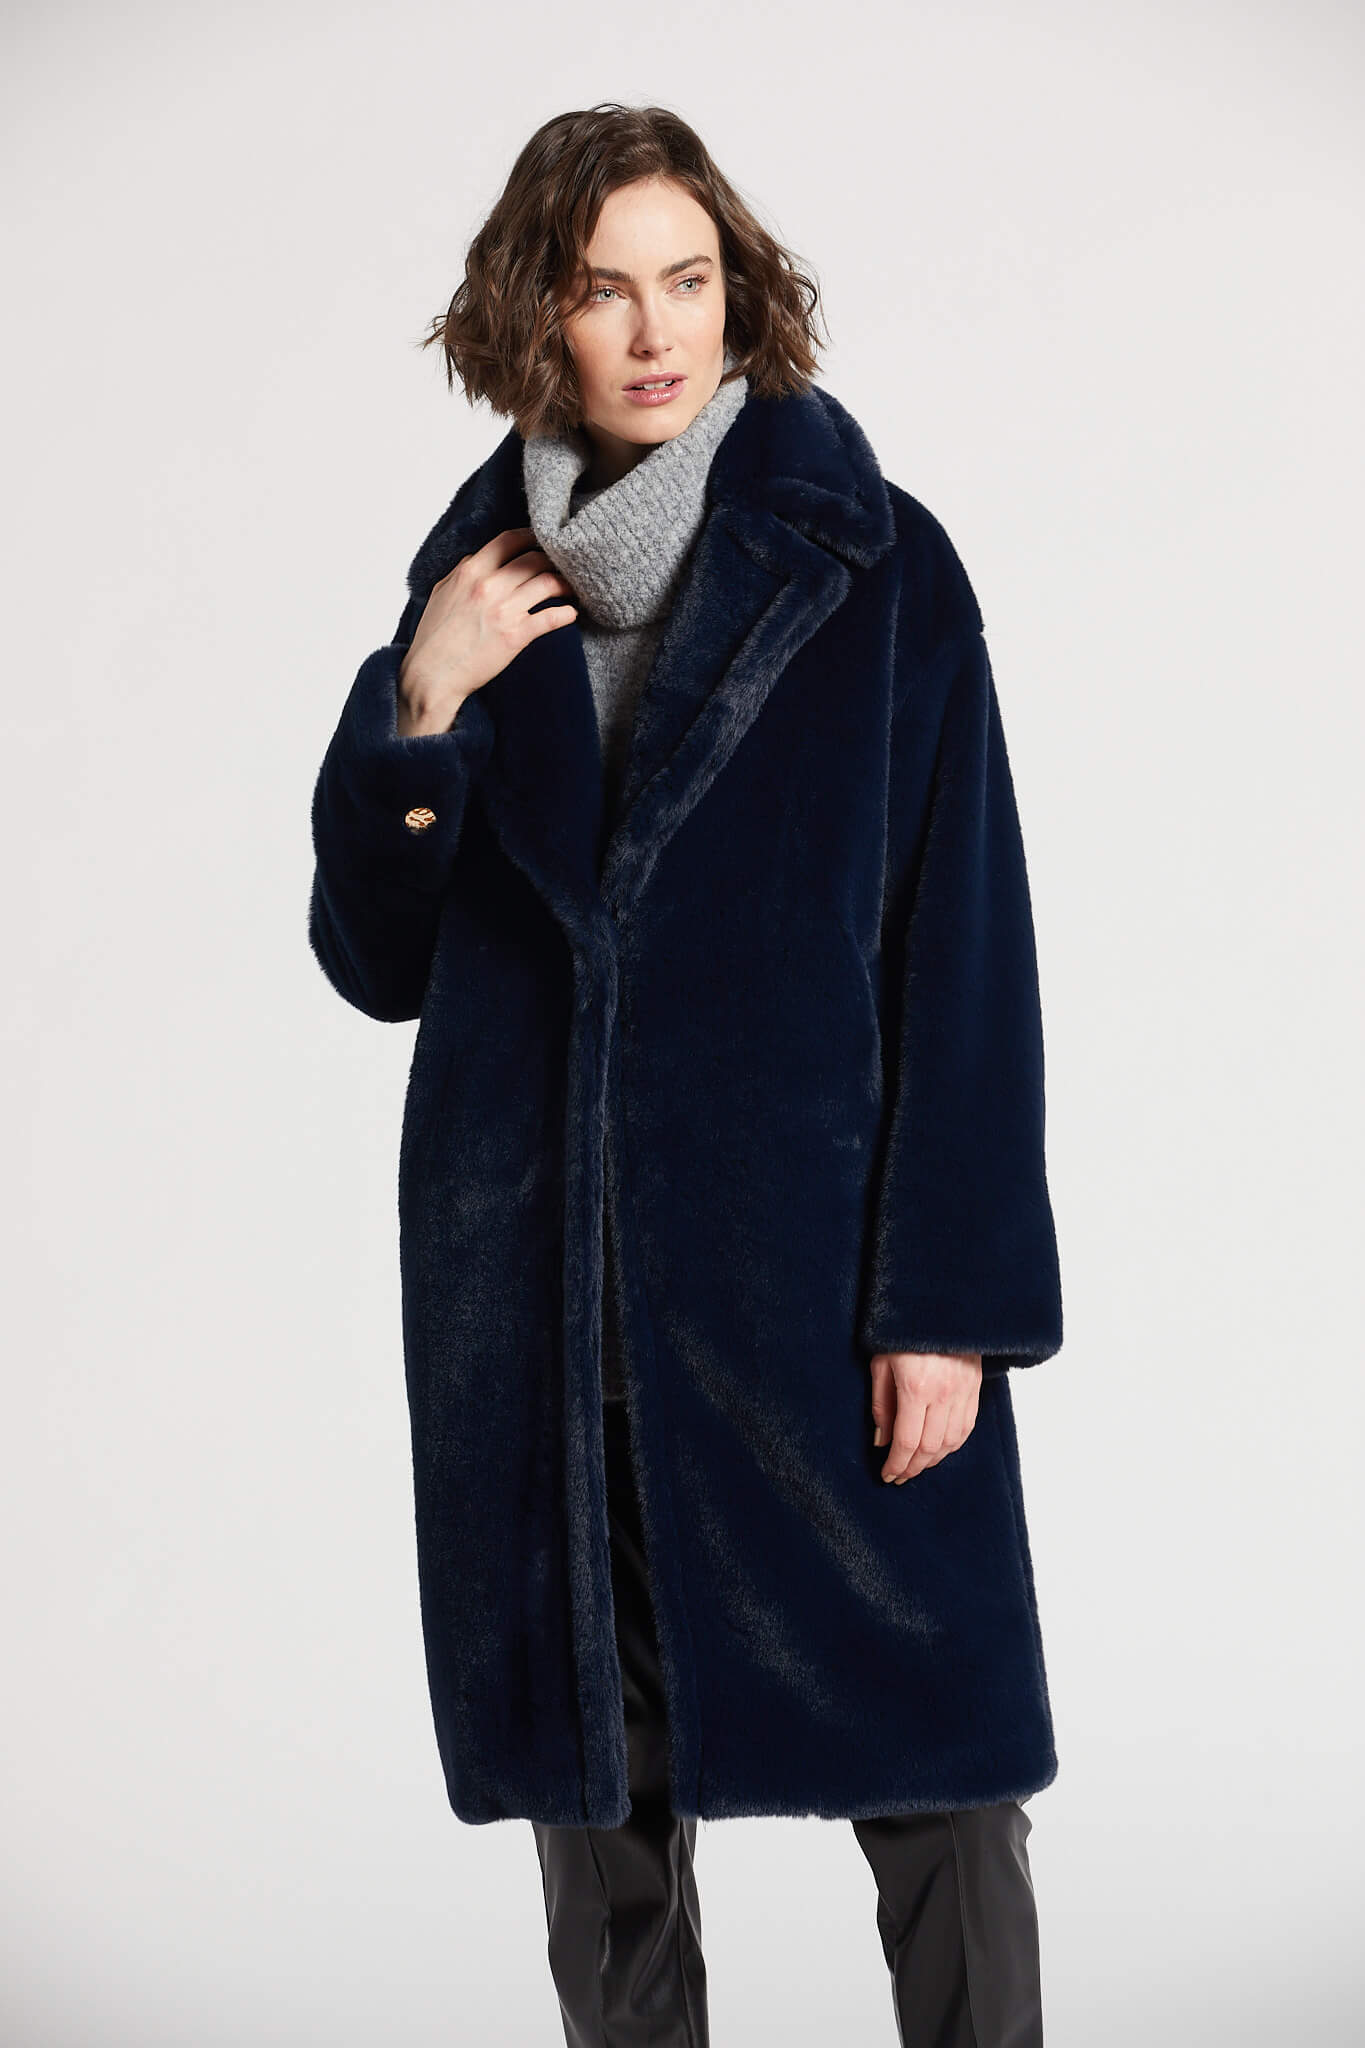 Polly long cozy faux fur coat w/ notch collar & large lapels